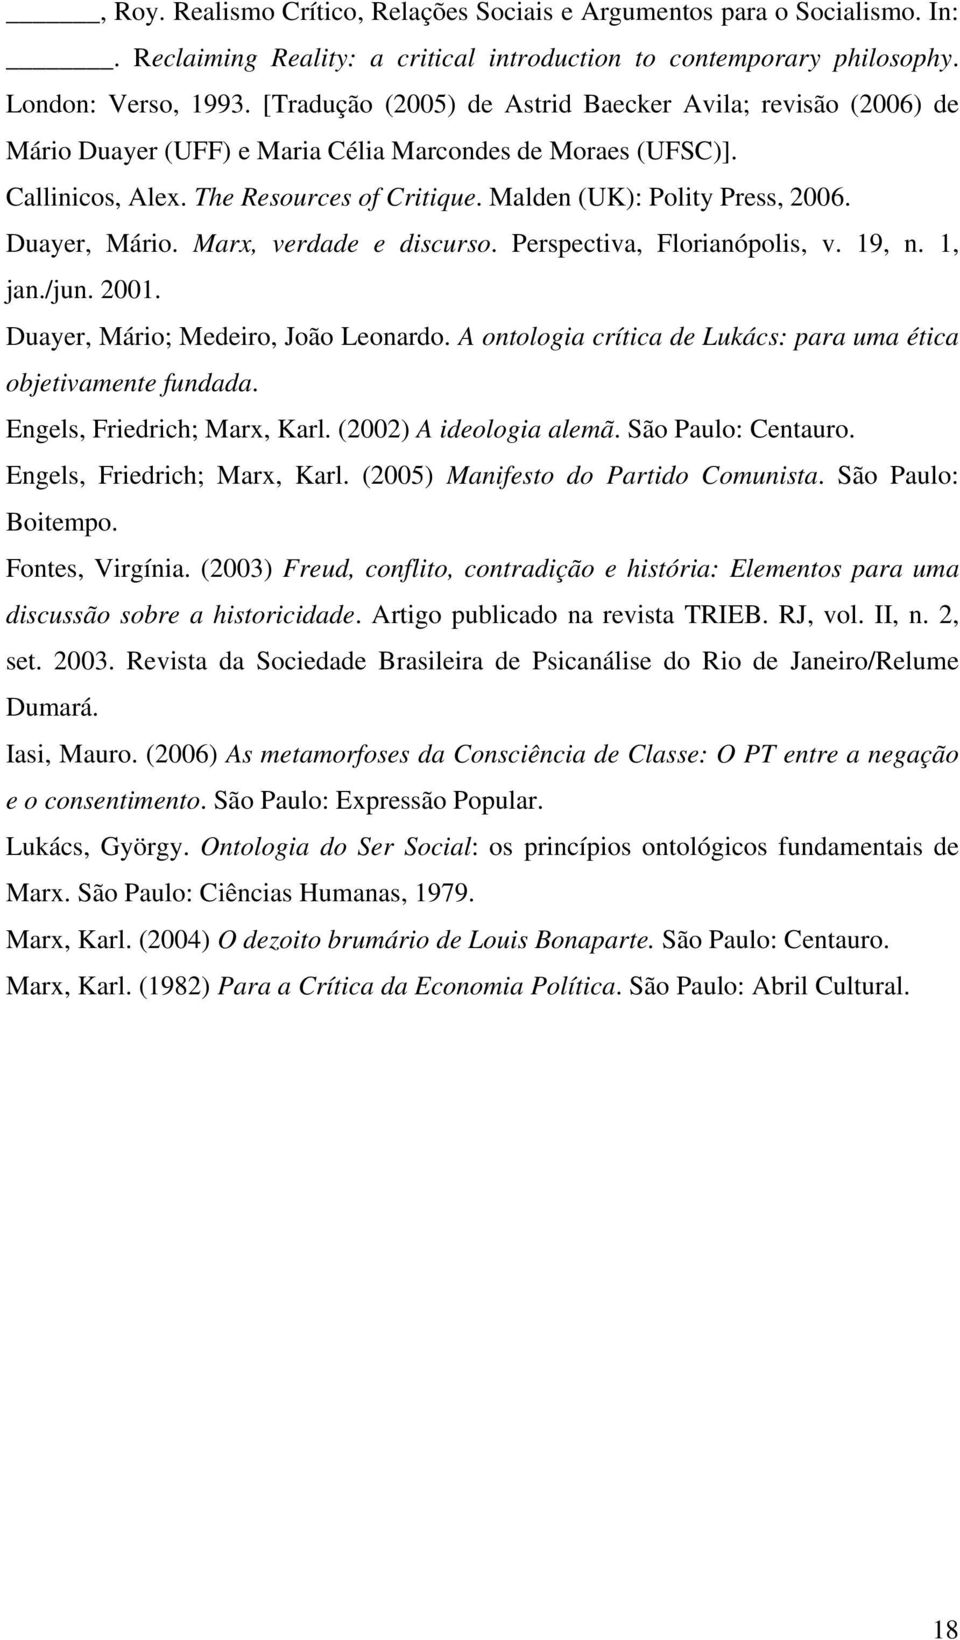 Duayer, Mário. Marx, verdade e discurso. Perspectiva, Florianópolis, v. 19, n. 1, jan./jun. 2001. Duayer, Mário; Medeiro, João Leonardo.